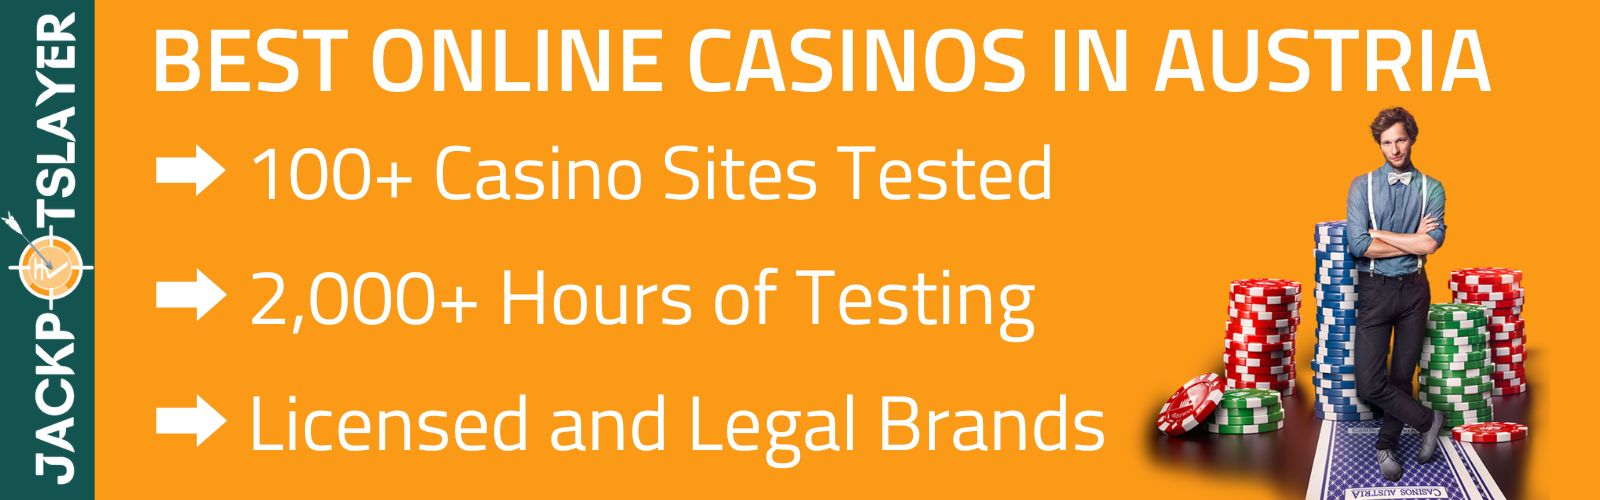 Macht mich seriöse Online Casinos Österreich reich?